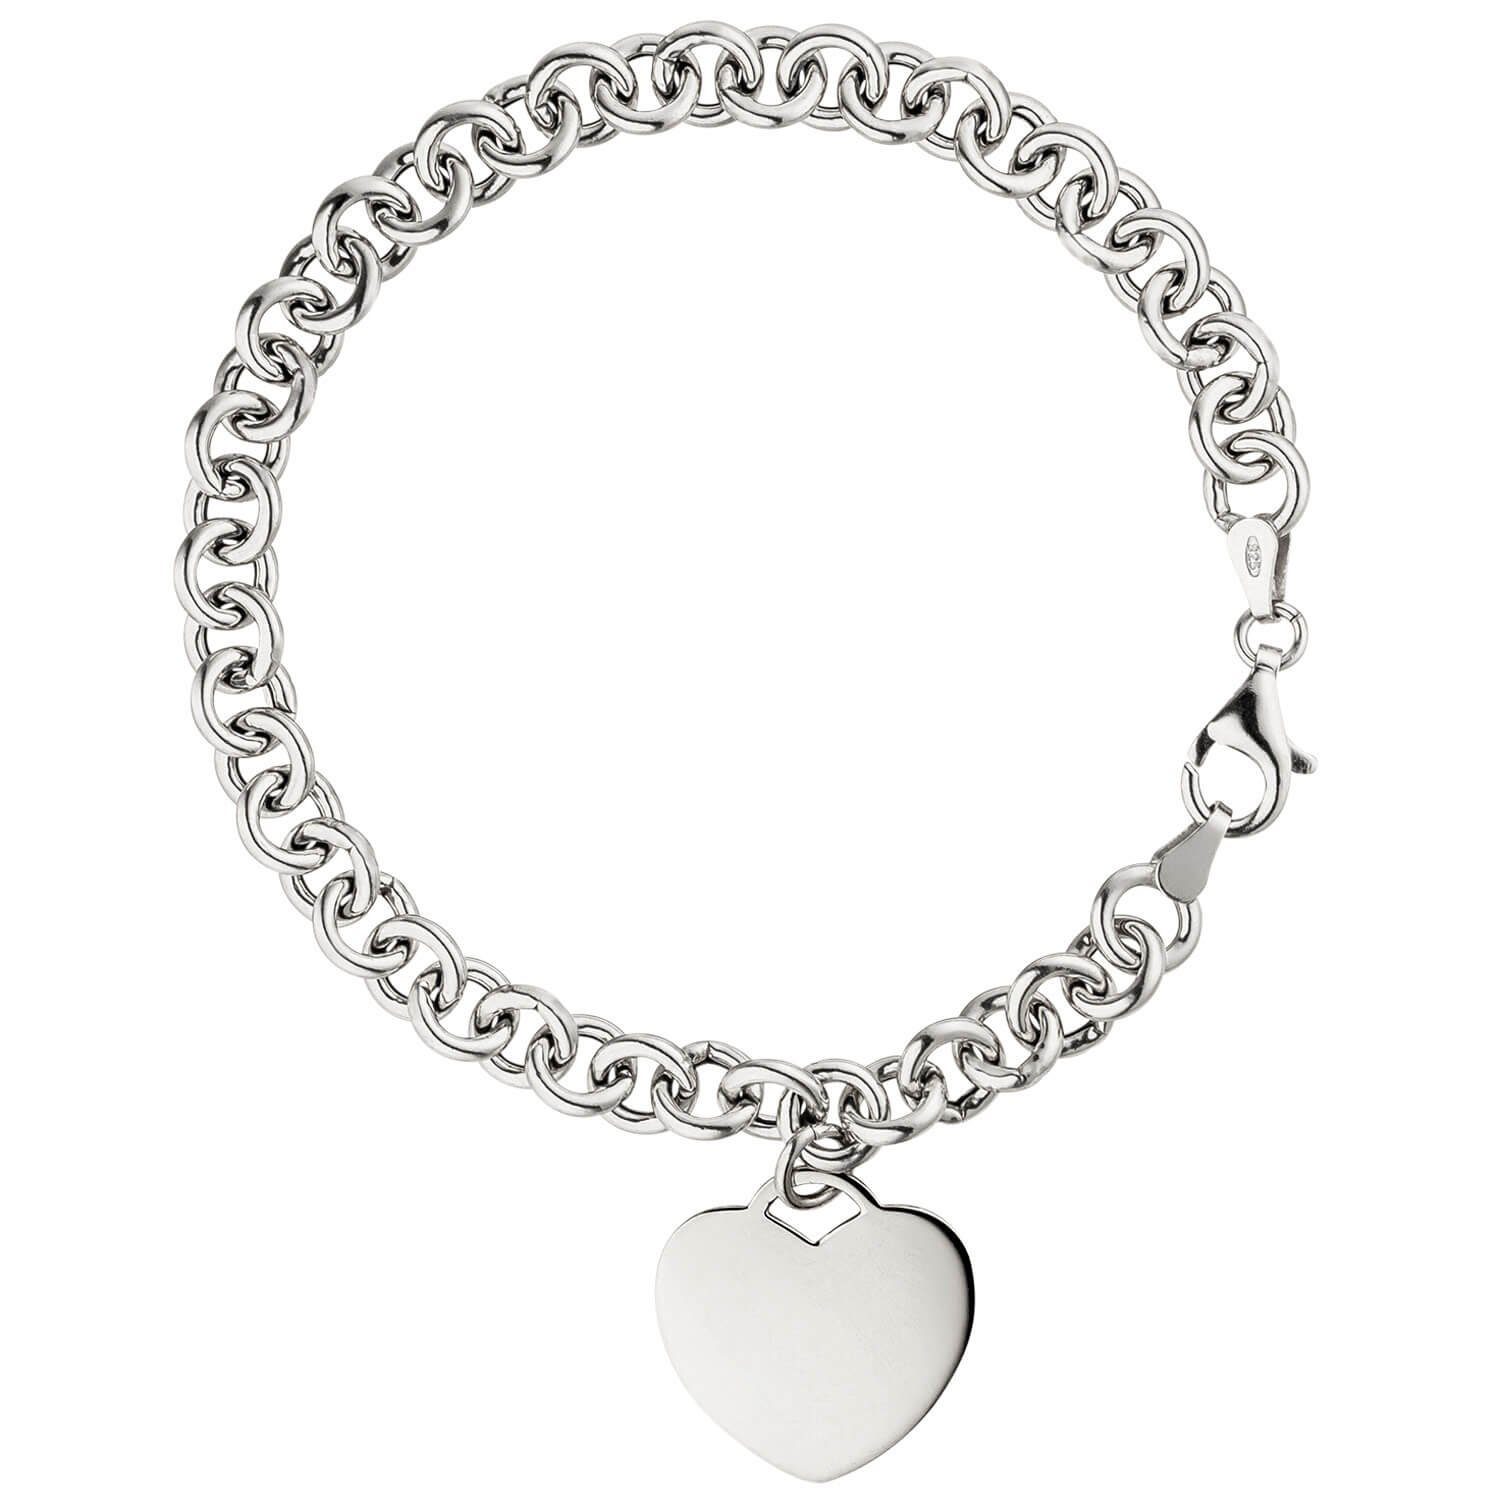 Schmuck Krone Silberarmband 6,4mm Armband Erbsarmband mit Anhänger Herz Herzchen 925 Silber rhodiniert, 19cm | Silberarmbänder